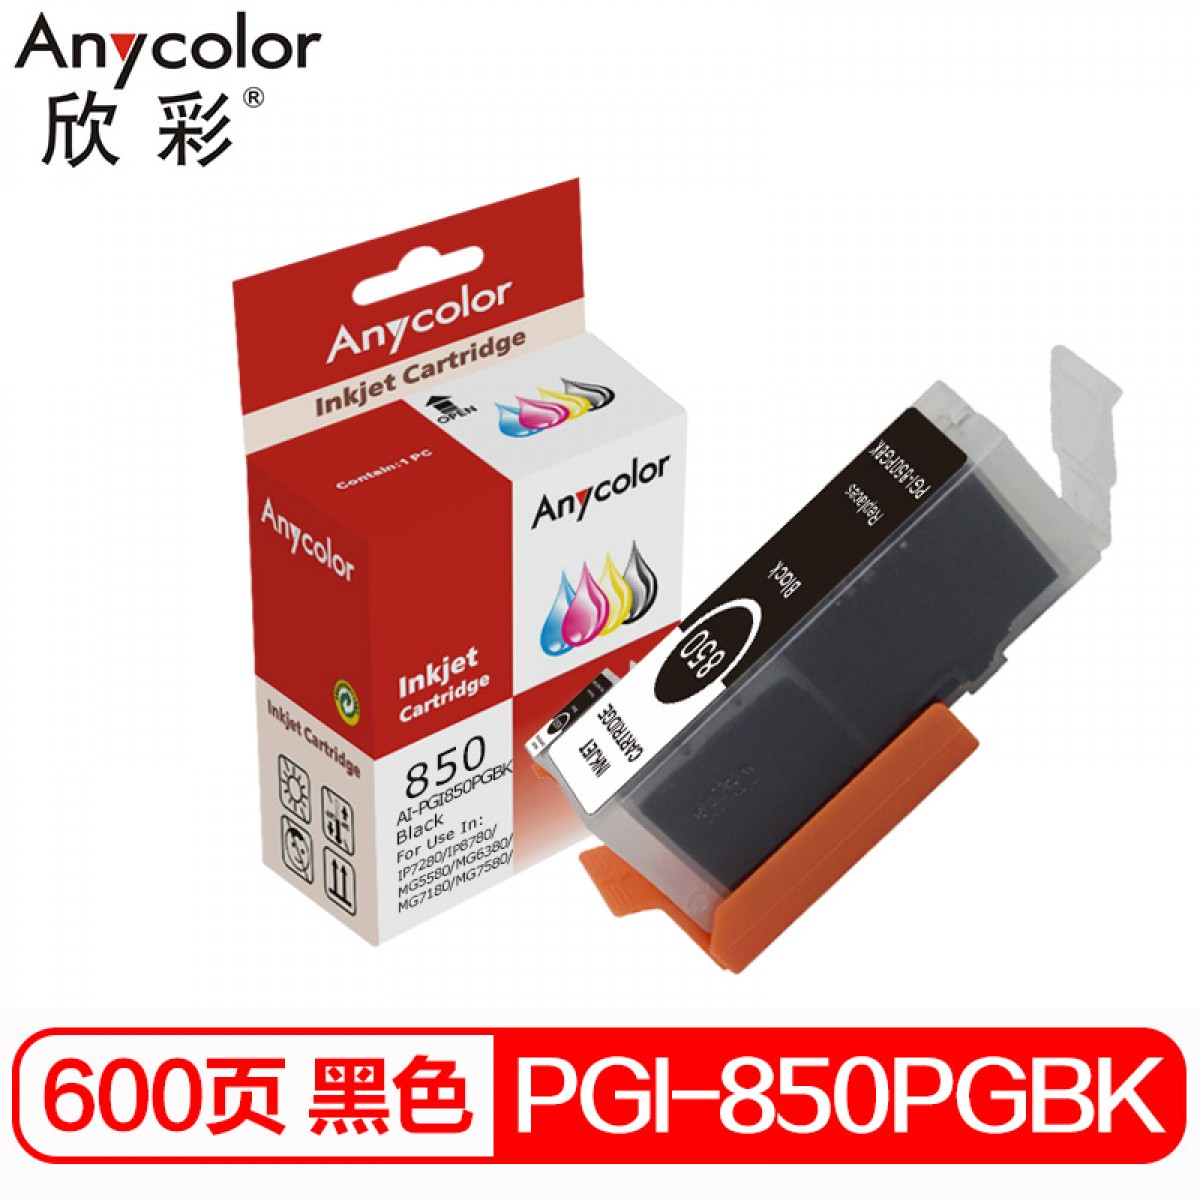 欣彩 PGI-850PGBK墨盒 黑色 适用佳能MX928 MG6400 iP7280 iX6880 MG6380 MG5480打印机